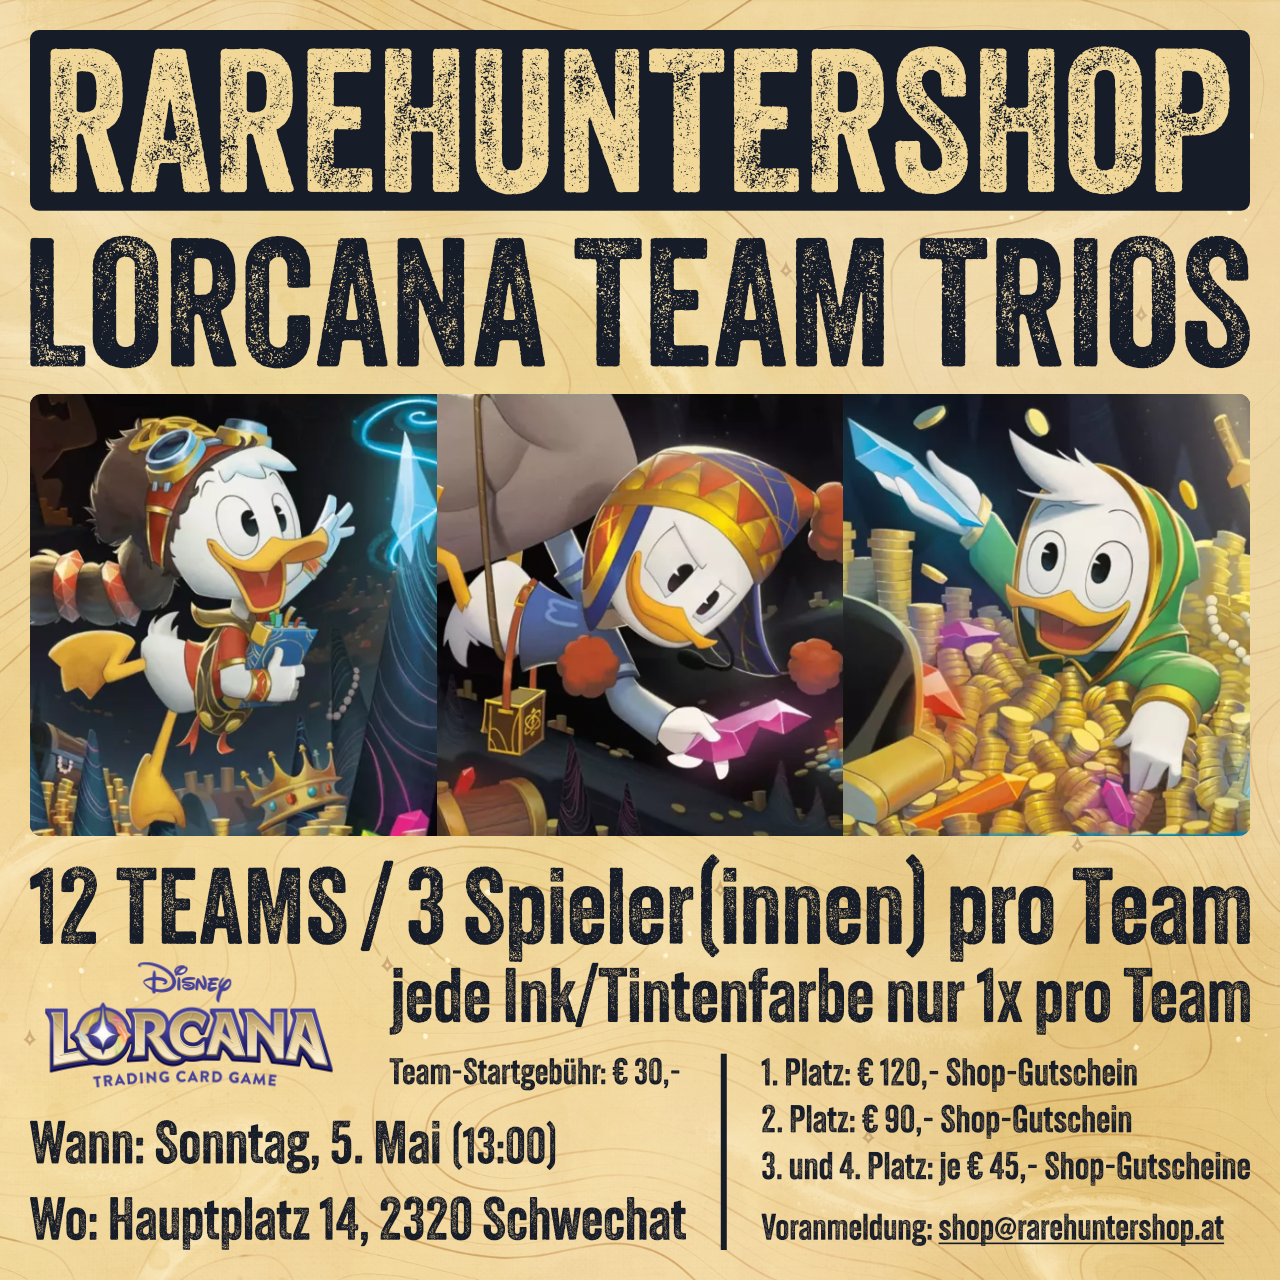 Lorcana Team Trios (Team-Ticket)